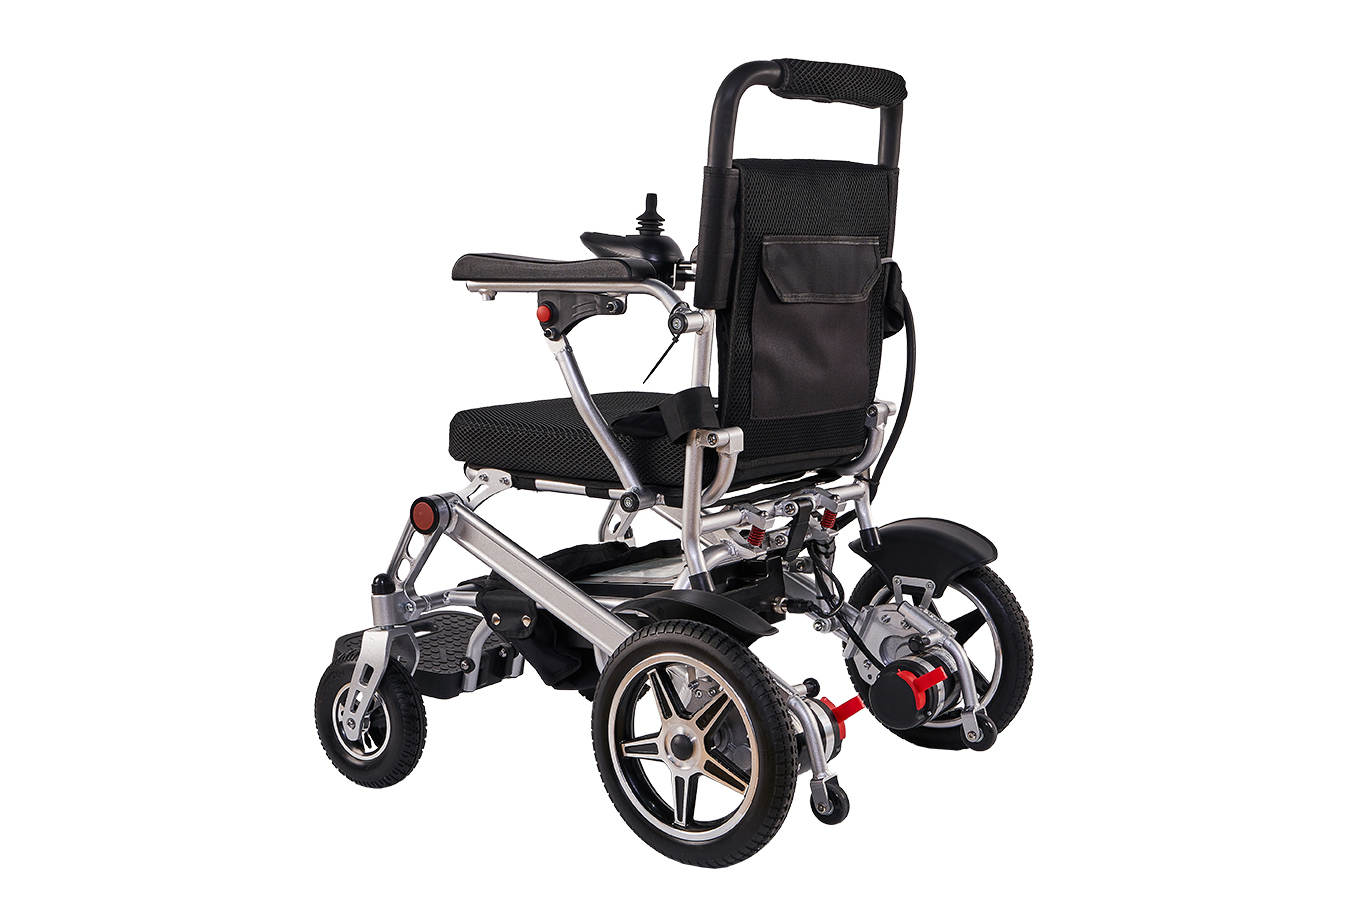 このような電動車椅子を見たことがありますか?革新的な電動車椅子: 機動性を向上させるポータブル軽量ソリューション